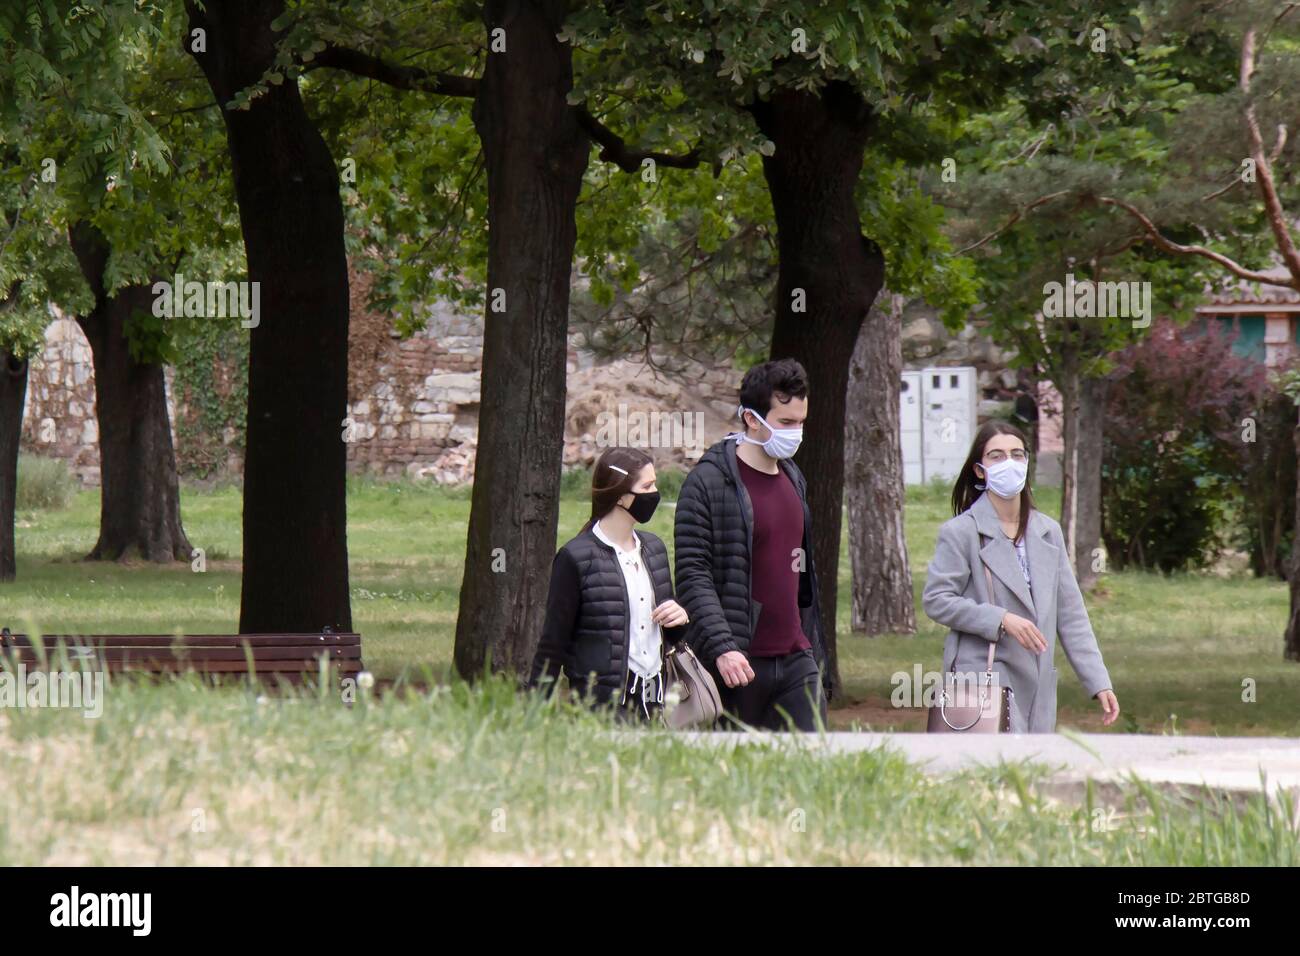 Belgrade, Serbie - 12 mai 2020 : jeunes portant un masque facial tout en marchant dans la nature, dans le parc public de la ville de Kalemegdan Banque D'Images